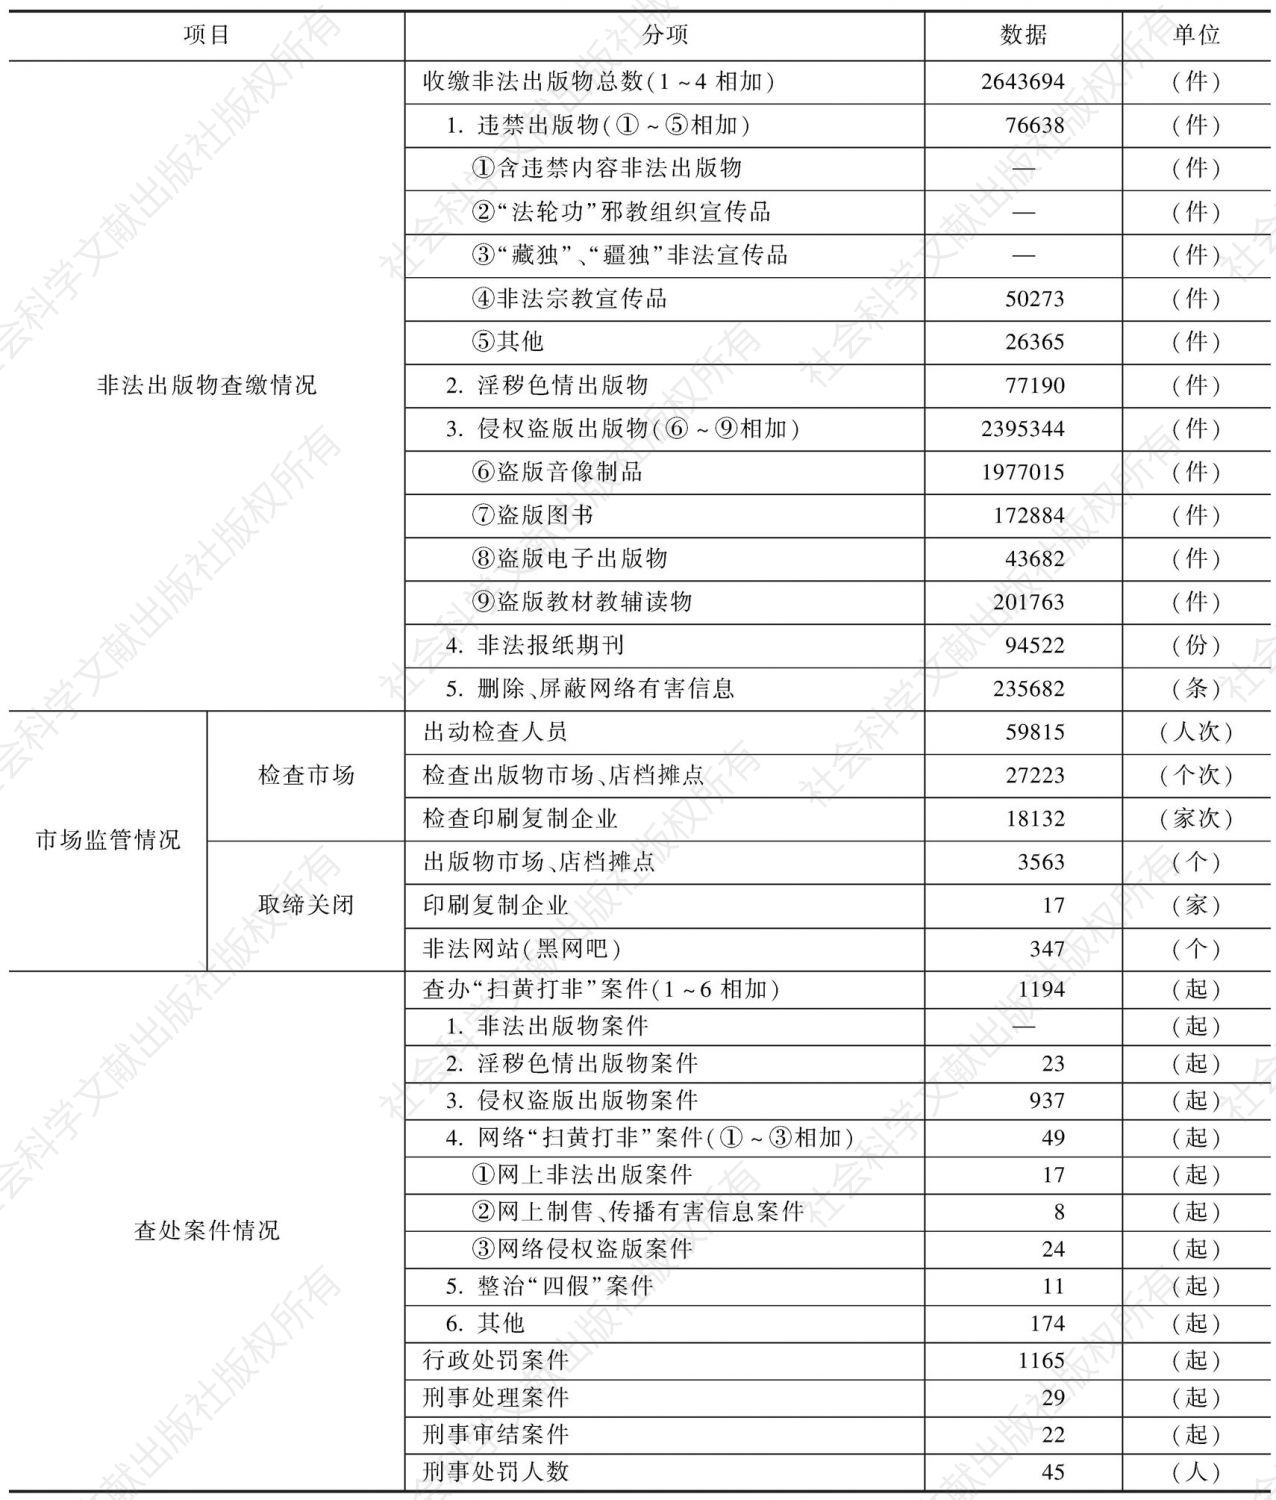 2010年贵州省“扫黄打非”工作成果统计表